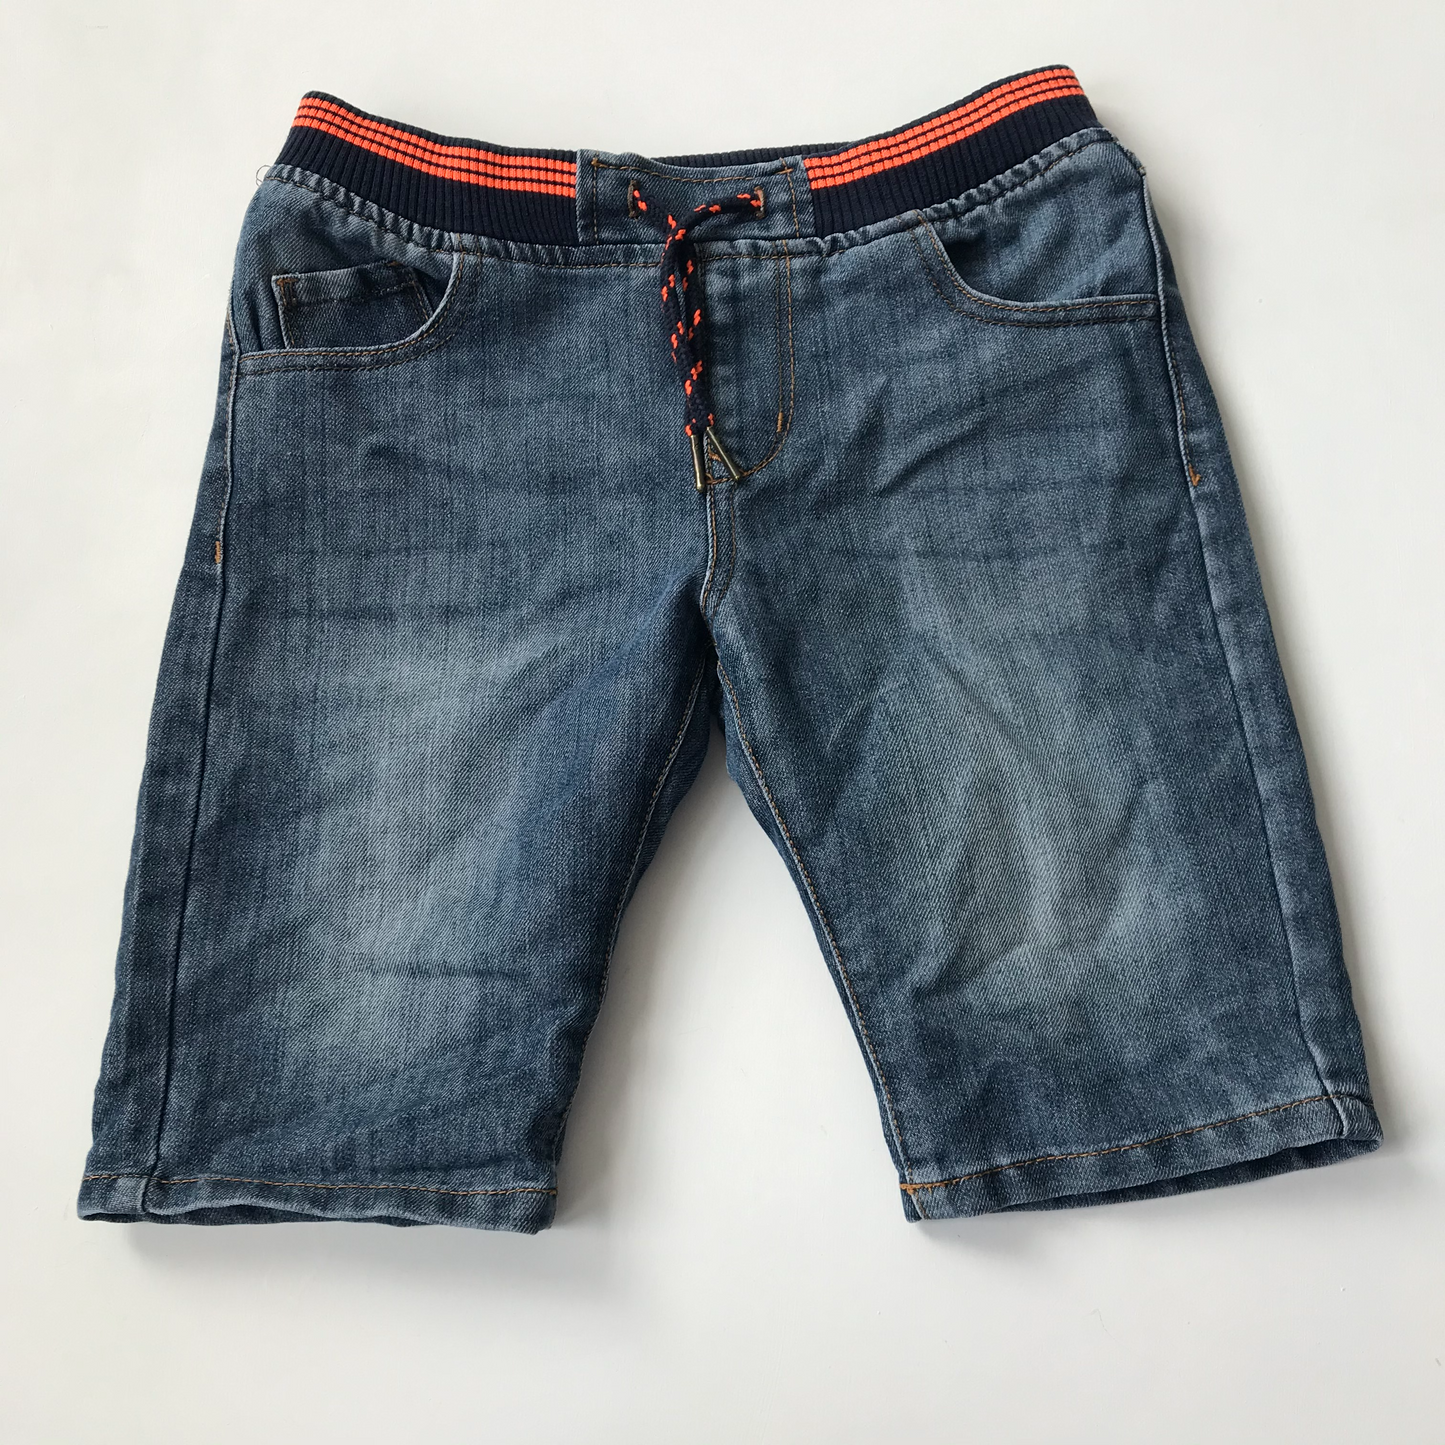 Shorts - Orange & Navy Waistband - Age 9